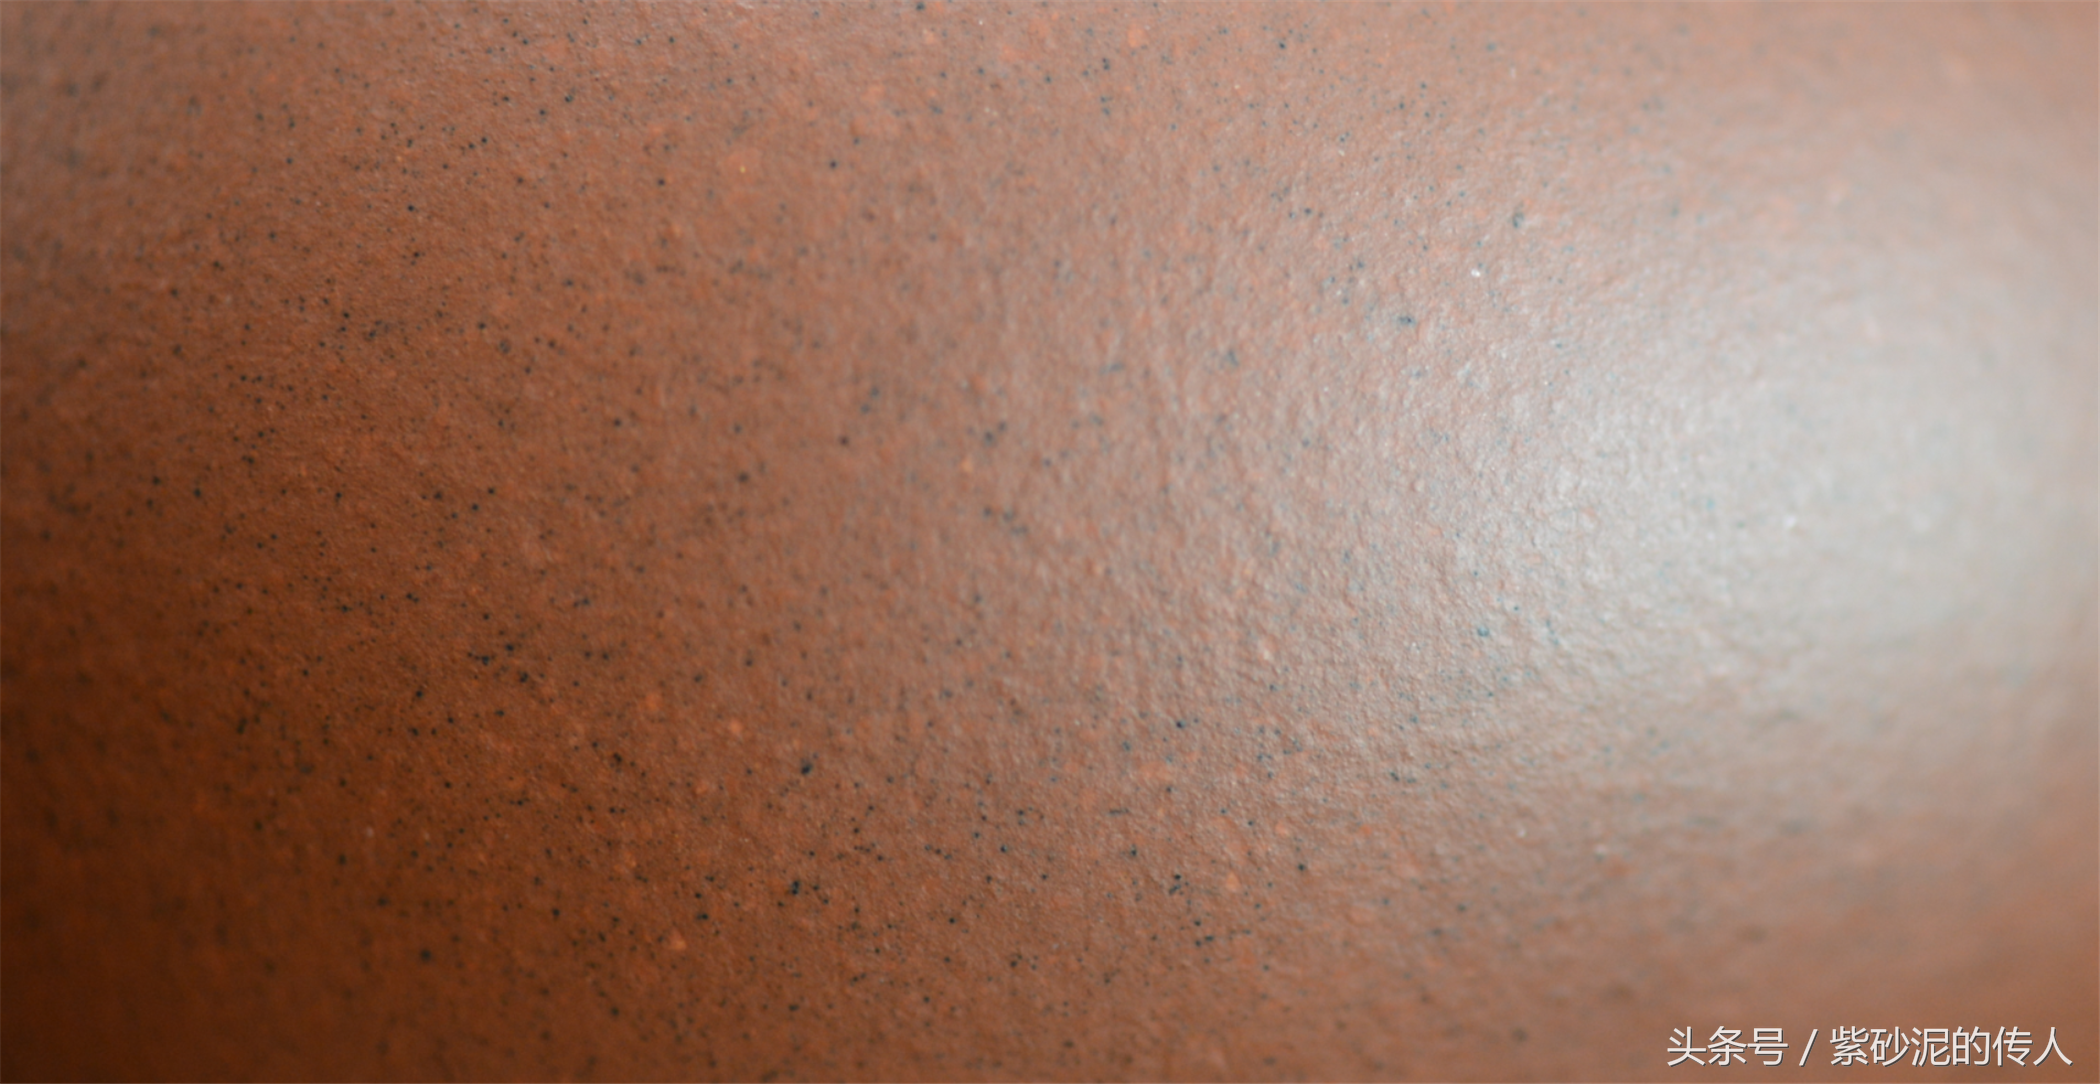 如何正确看待黄龙山红清水泥紫砂壶表面的“铁黑”和“铁熔”？